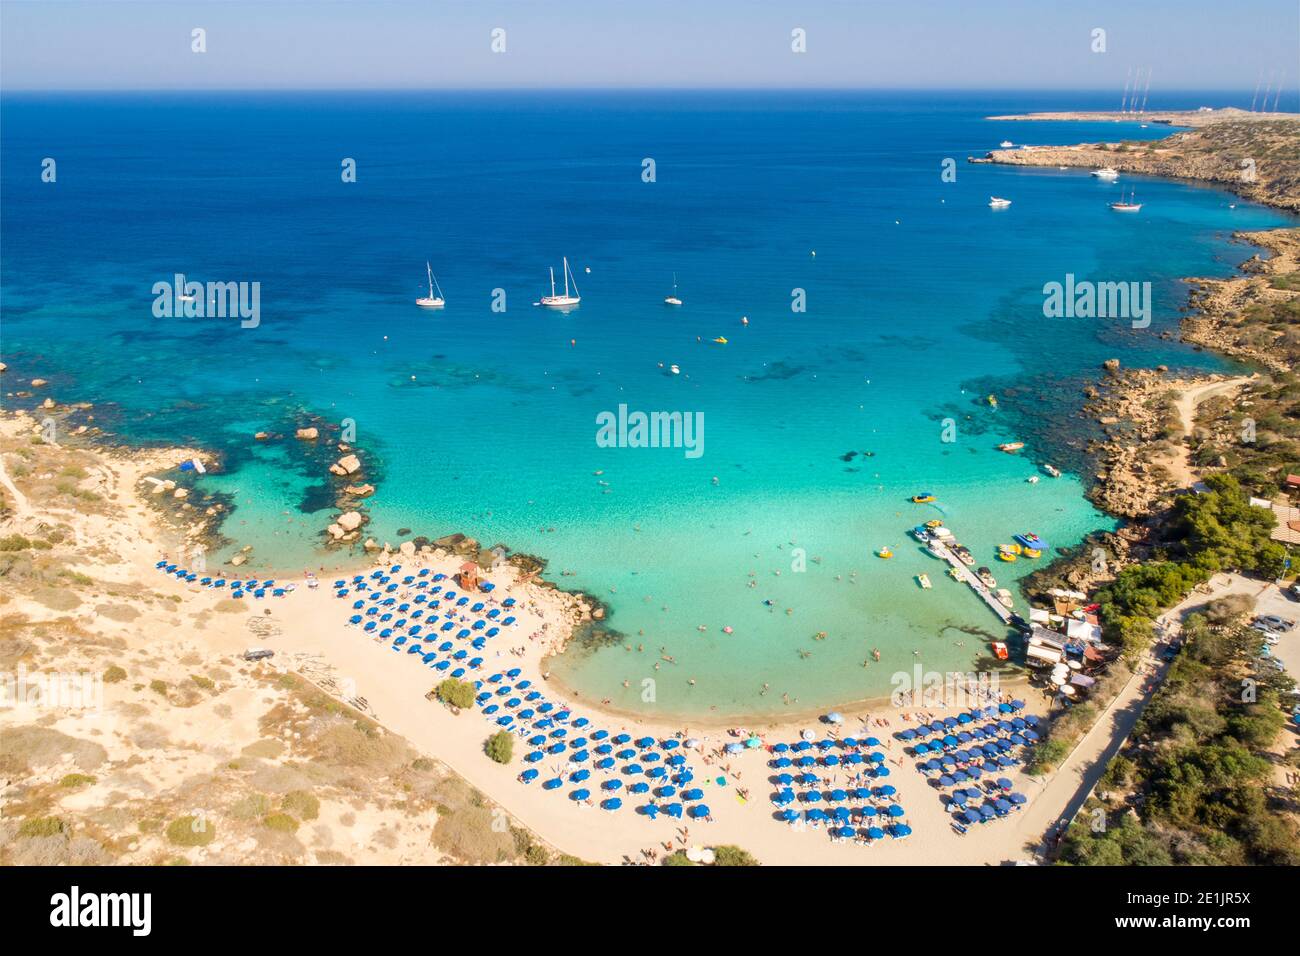 Vue aérienne sur la plage de Konnos - un lieu touristique populaire à Ayia Napa, Chypre Banque D'Images